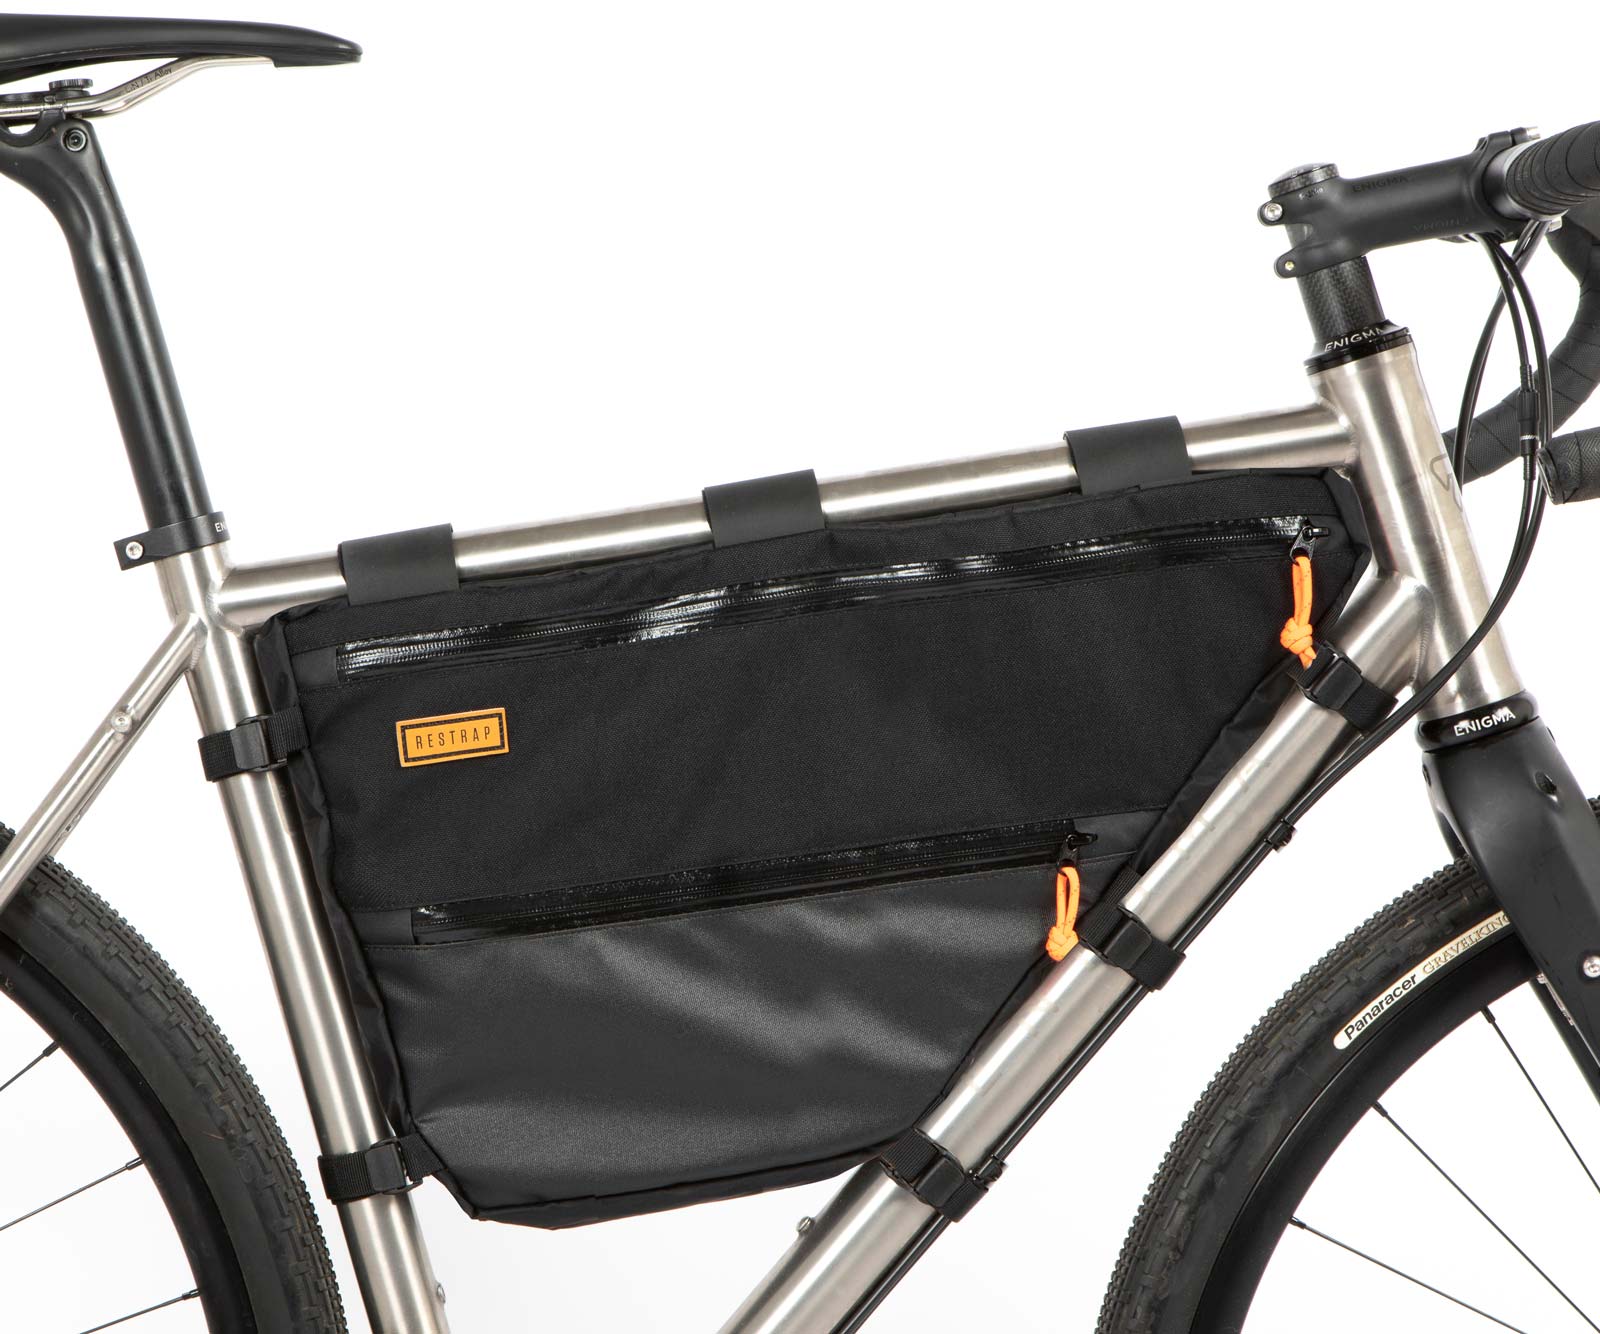 restrap full frame bags for bikepacking